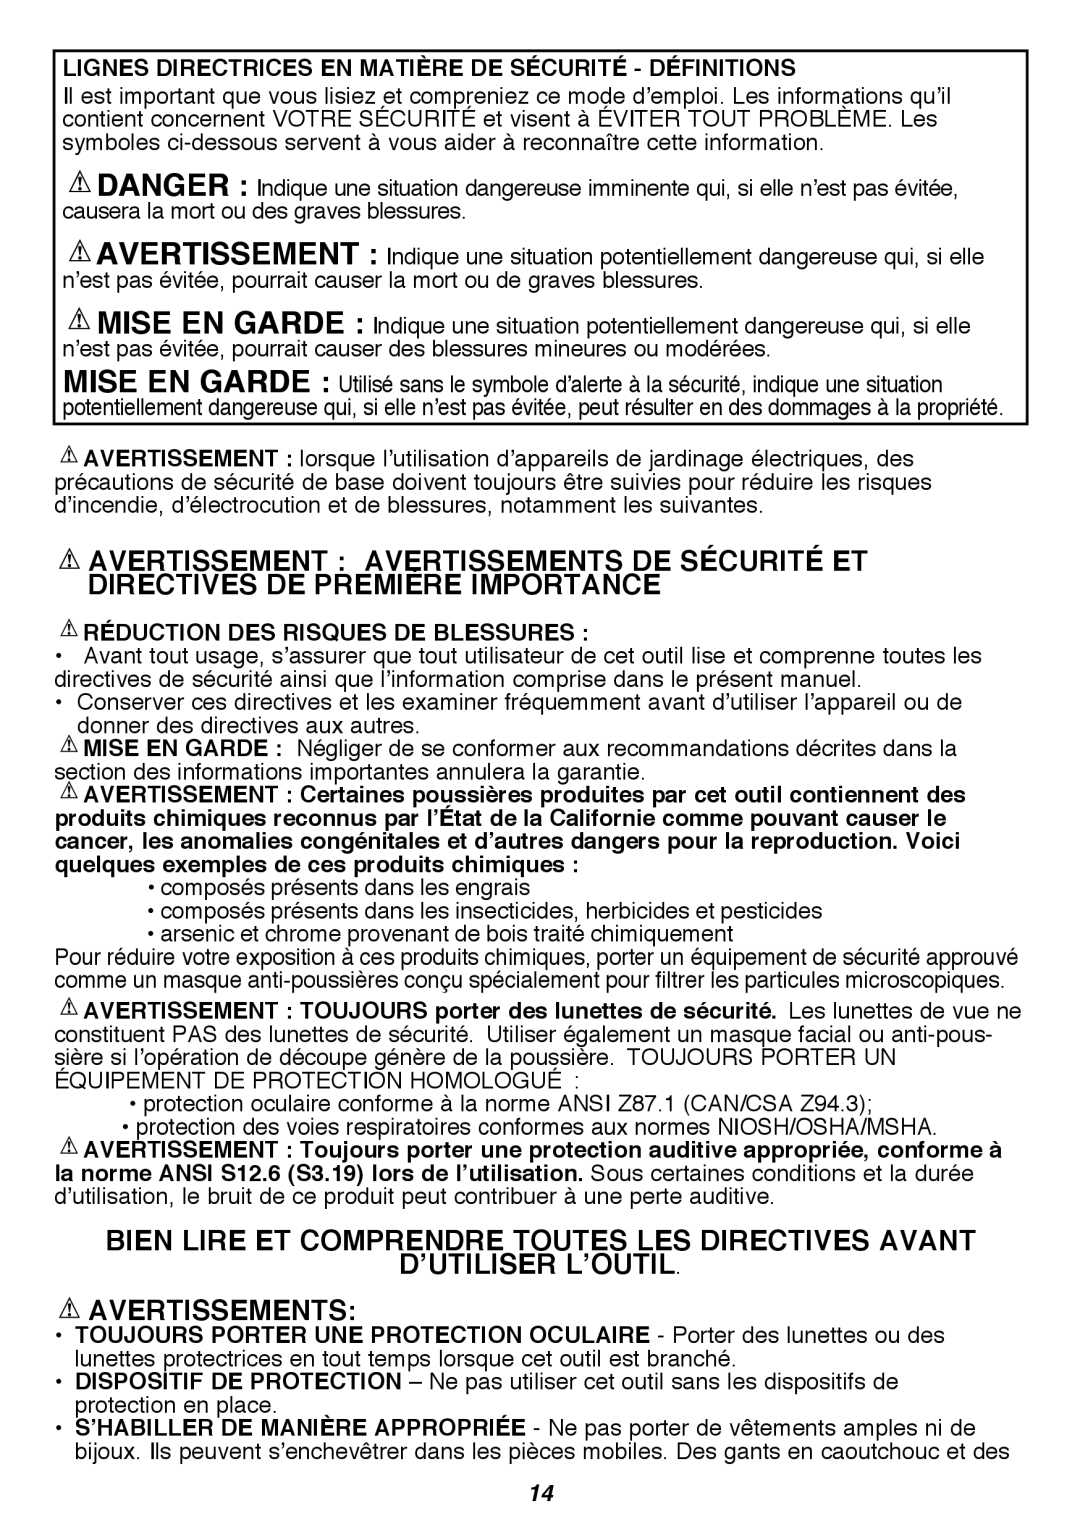 Black & Decker LST420 Bien Lire Et Comprendre Toutes Les Directives Avant, D’Utiliser L’Outil Avertissements 